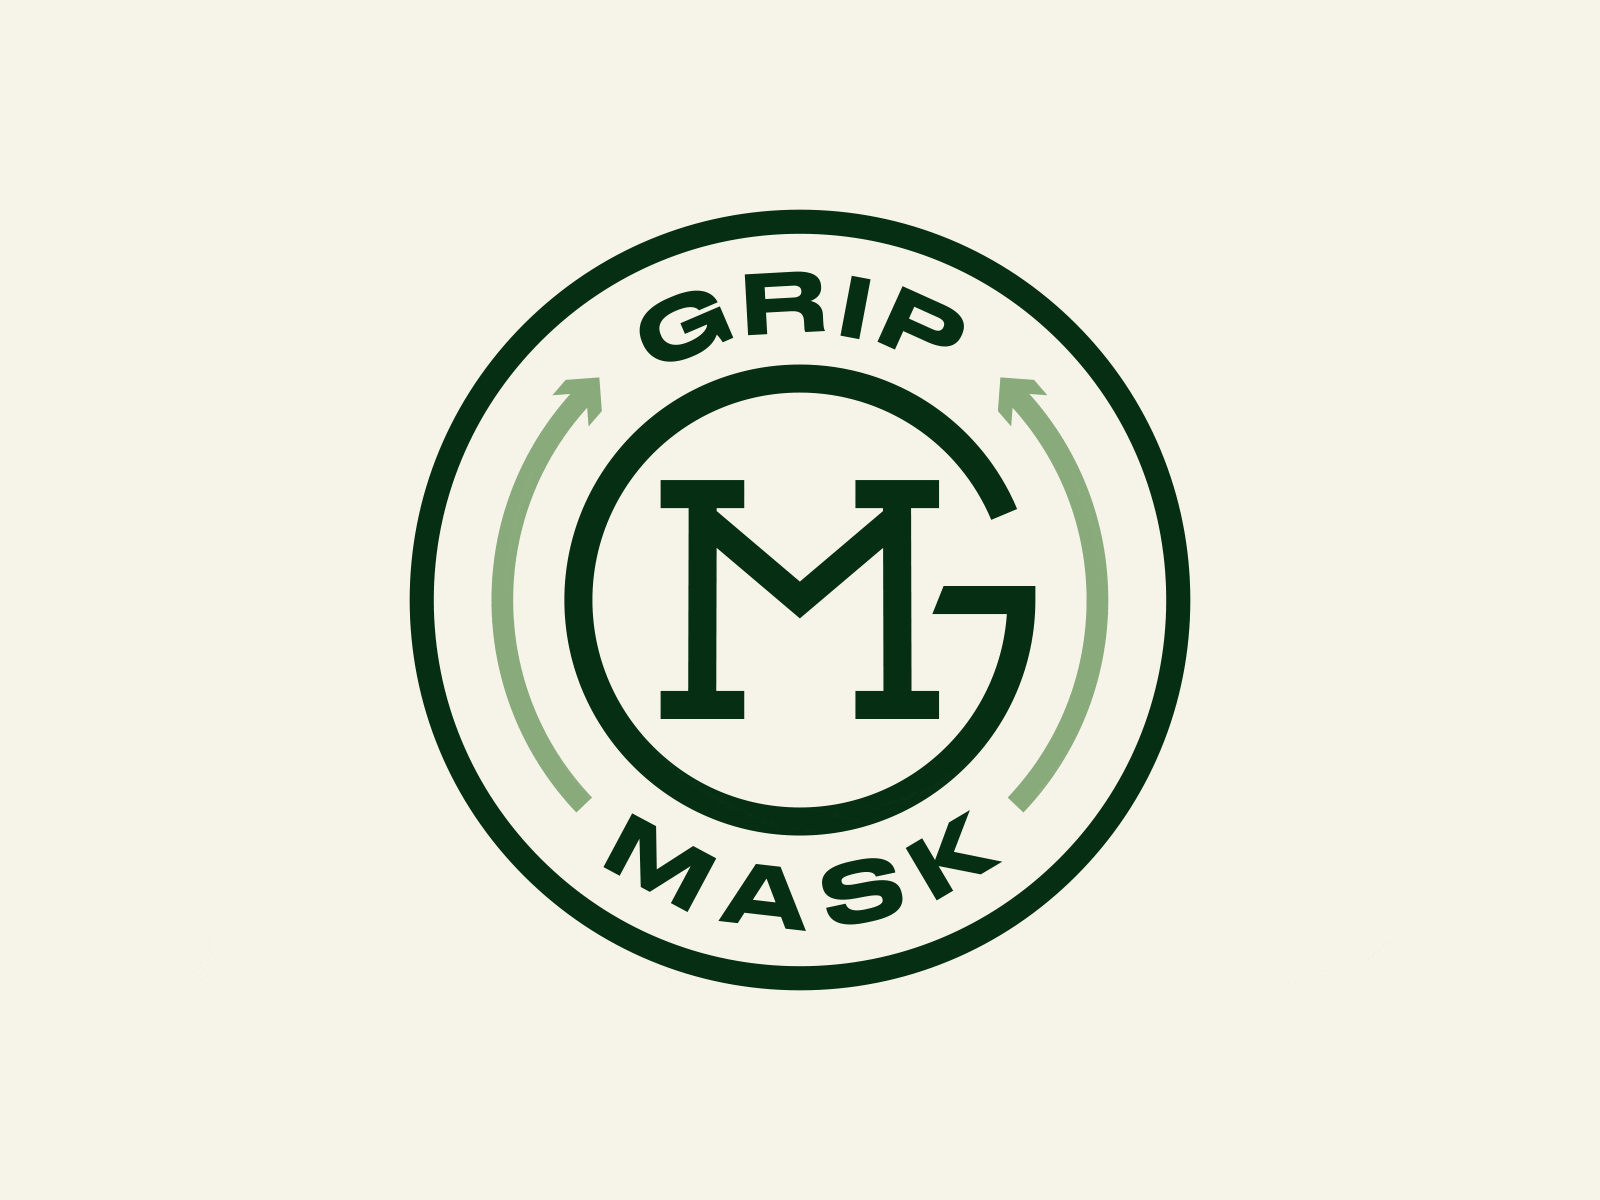 Grip Mask brand identity gaiter logo neck gaiter